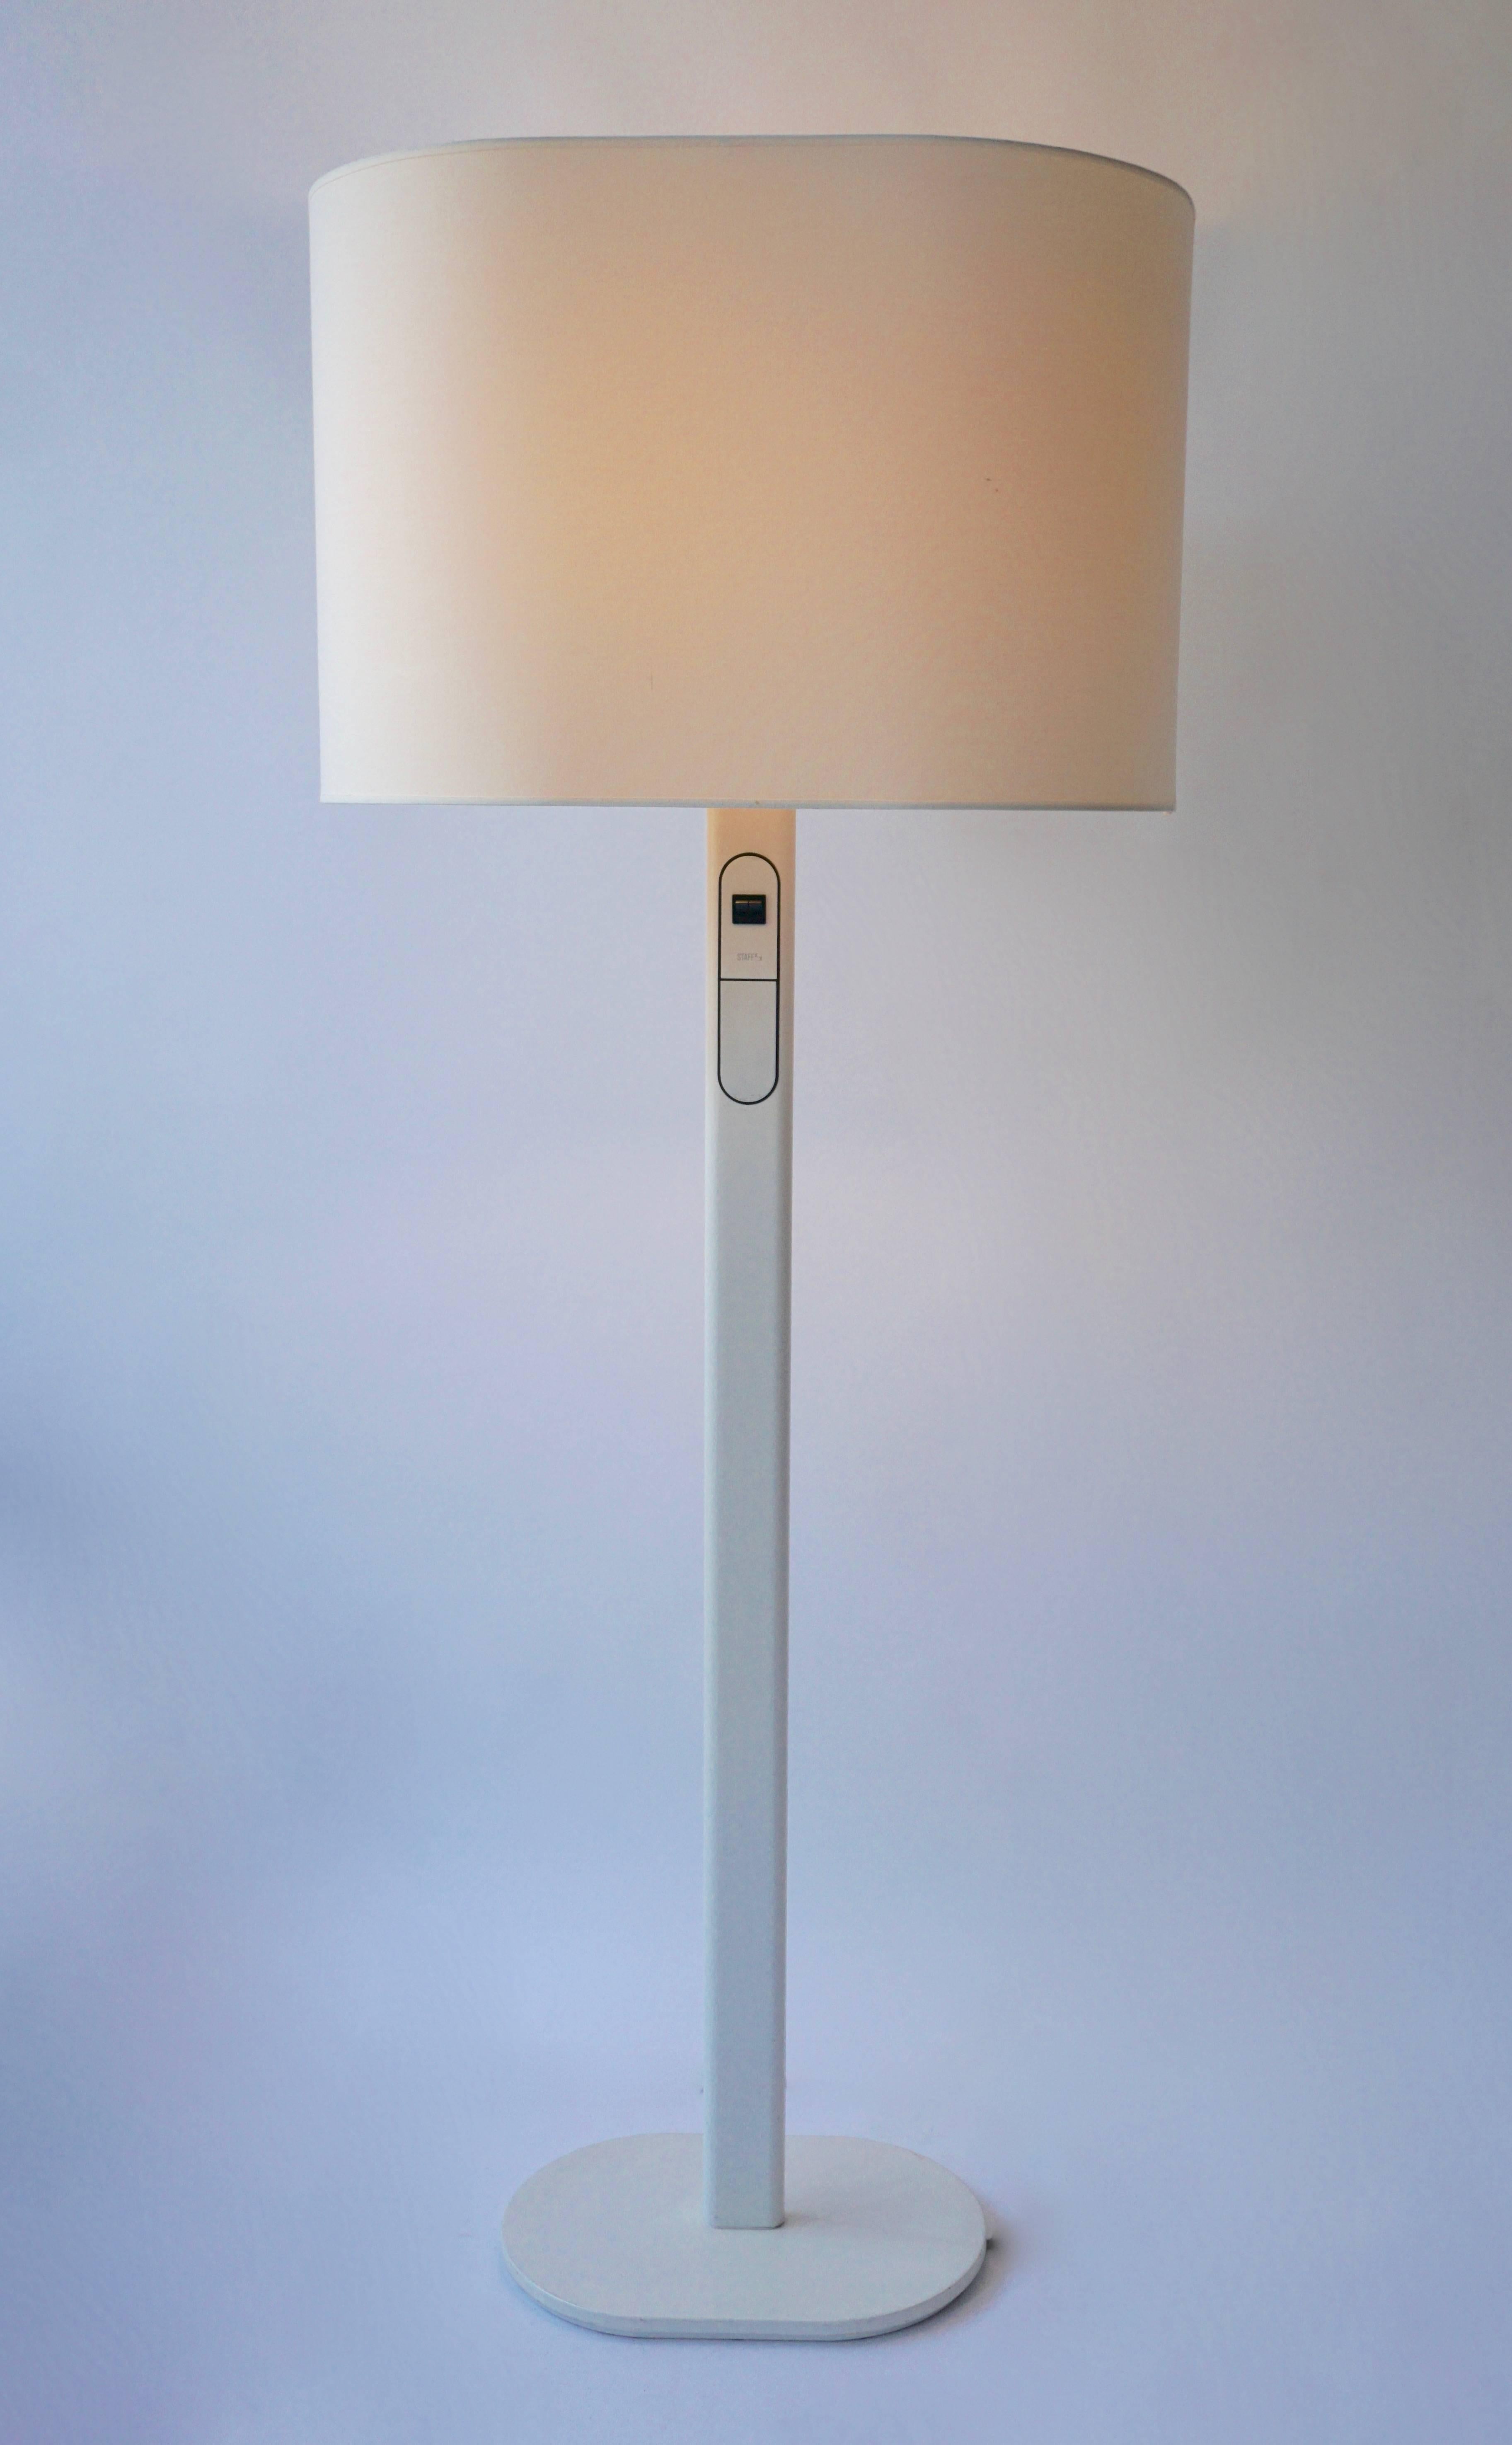 Rare lampadaire de Staff, Allemagne.
Le gradateur est intégré à la lampe et la lampe supérieure peut être gradée séparément.
Une forme fonctionnelle peu commune dans un bel état vintage.
Mesures : Hauteur 152 cm.